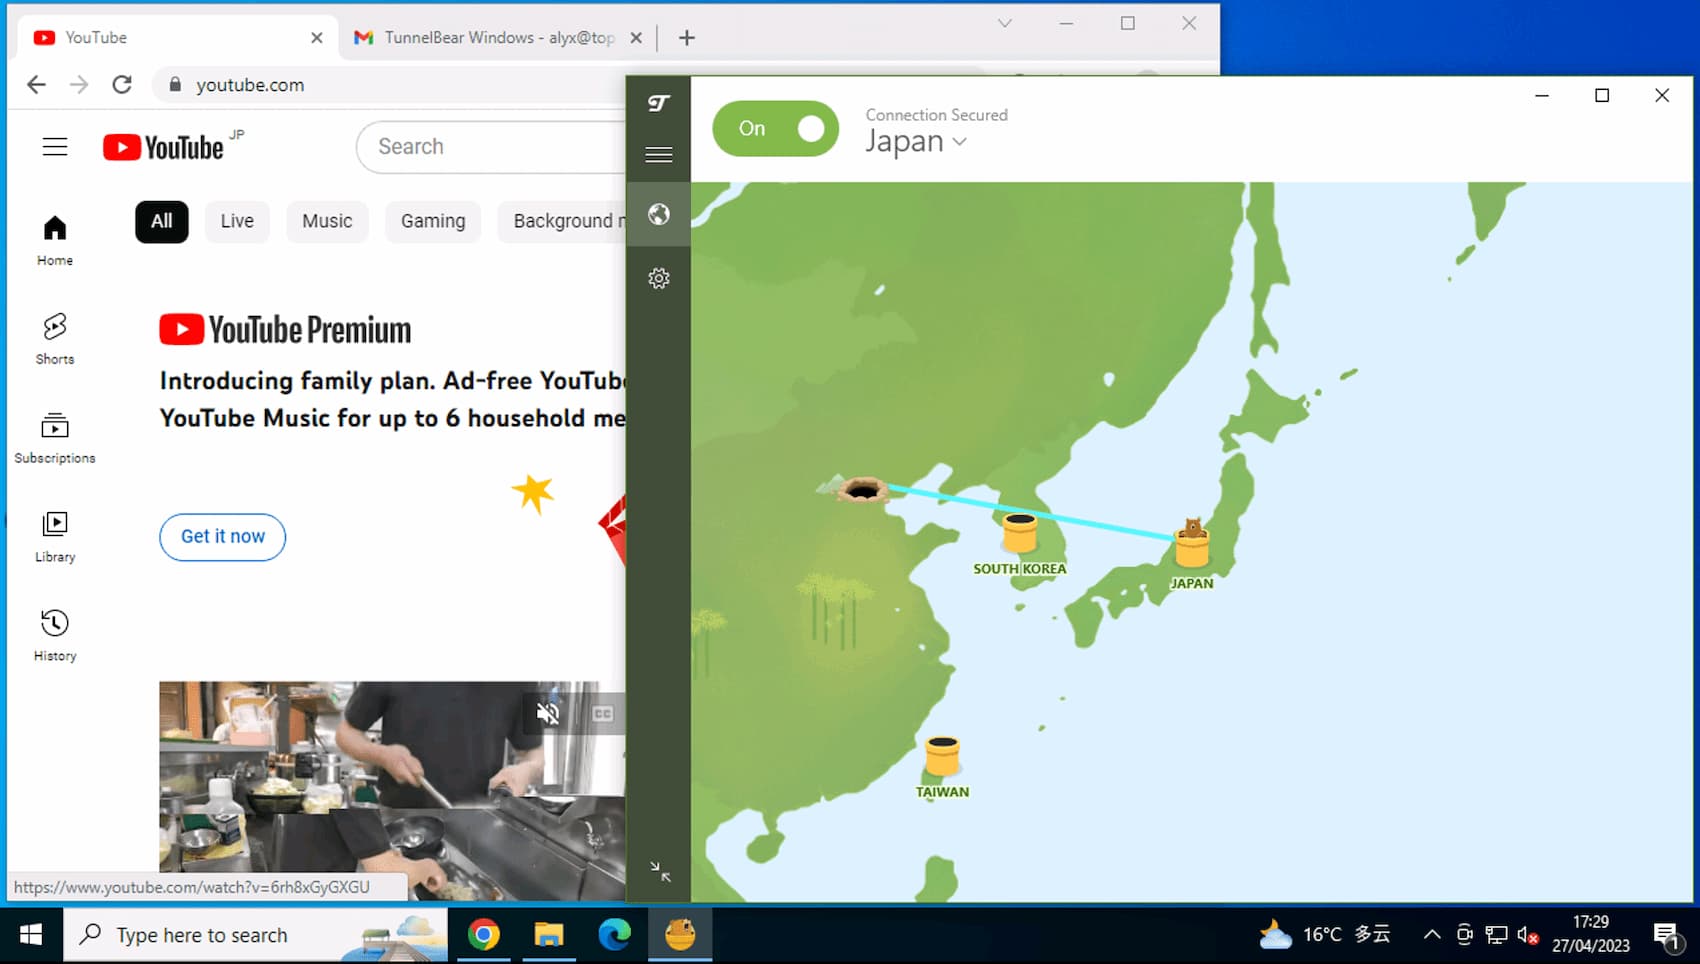 Notre bureau à distance en Chine montre que TunnelBear contourne le pare-feu pour débloquer YouTube alors qu'il est connecté à un serveur japonais.